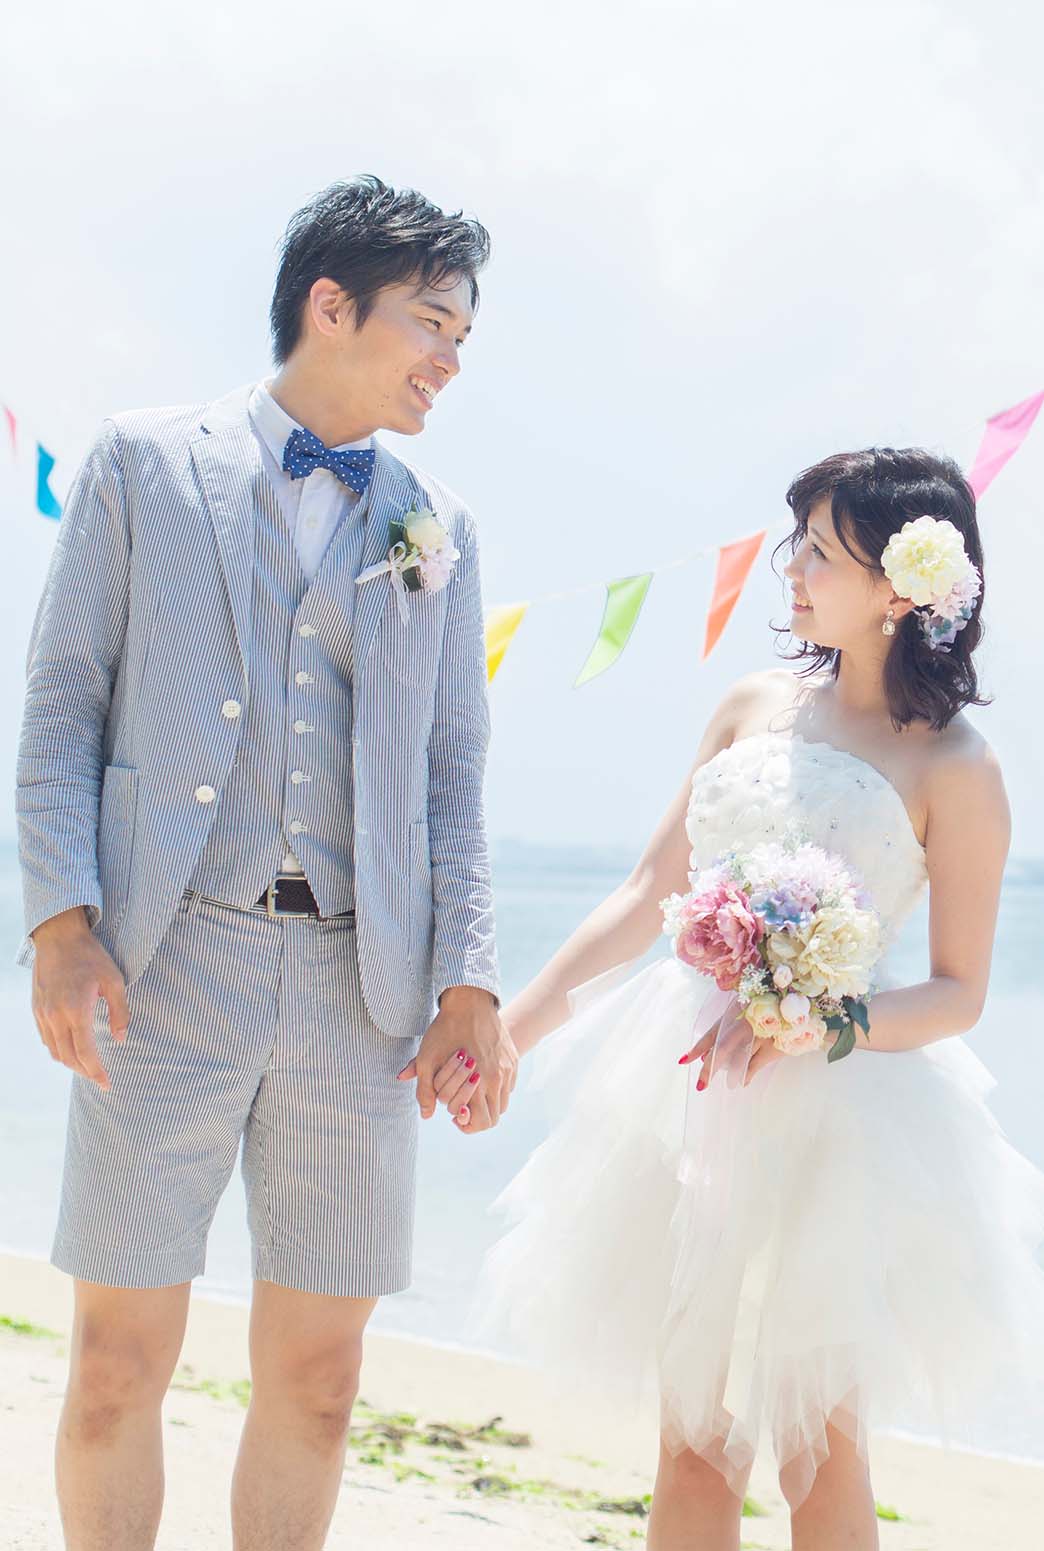 婚活で成婚となった男女が沖縄を感じさせるガーデンで結婚式を挙げる様子